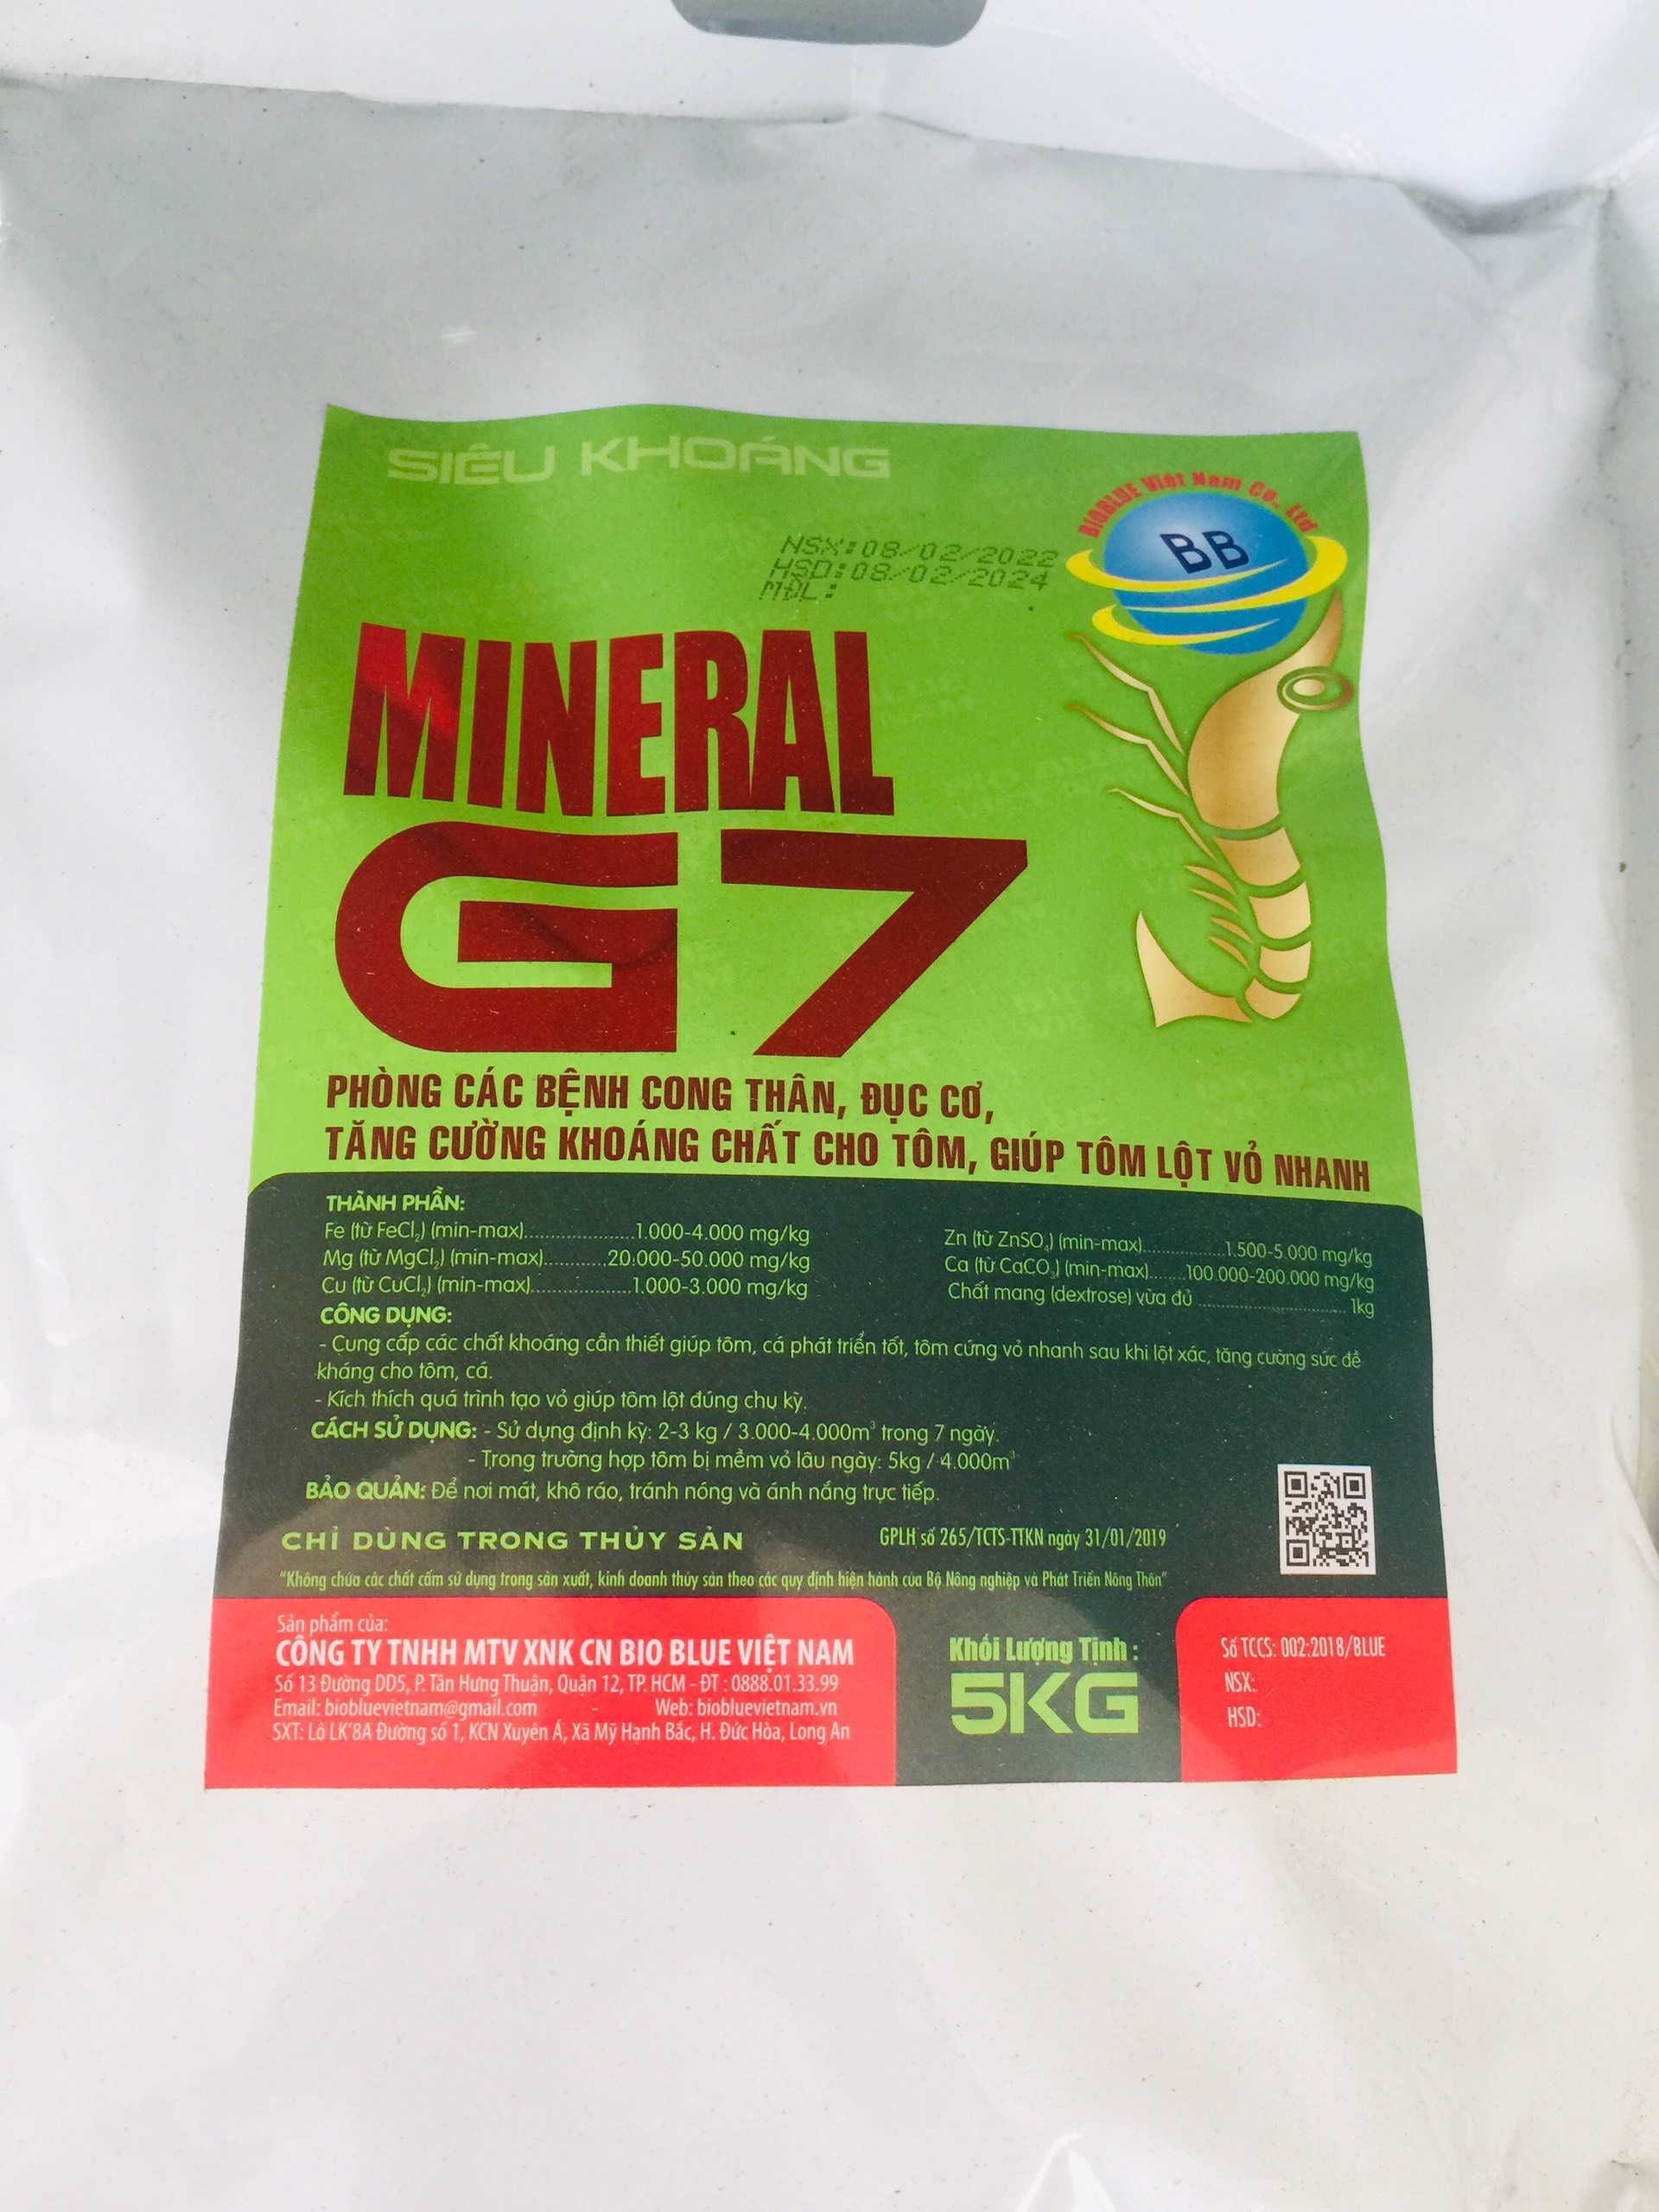 MINERAL G7 TÚI 5KG